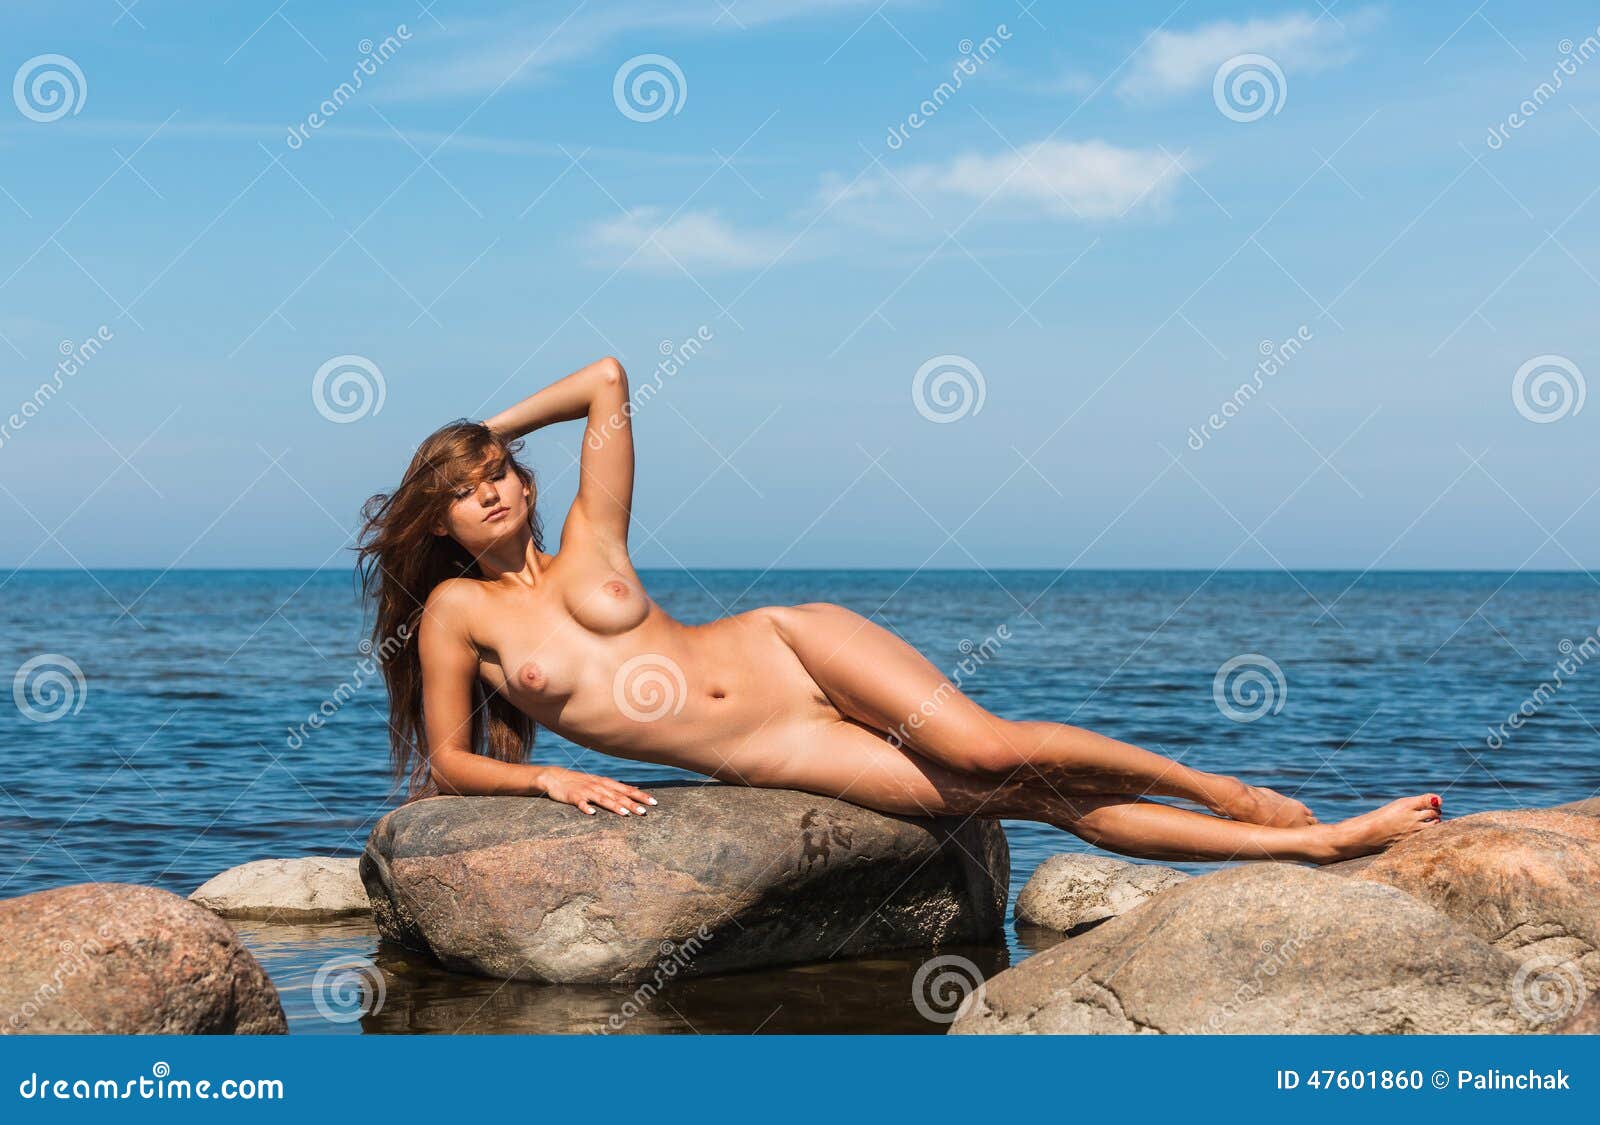 amari jackson share beautiful young woman nude photos